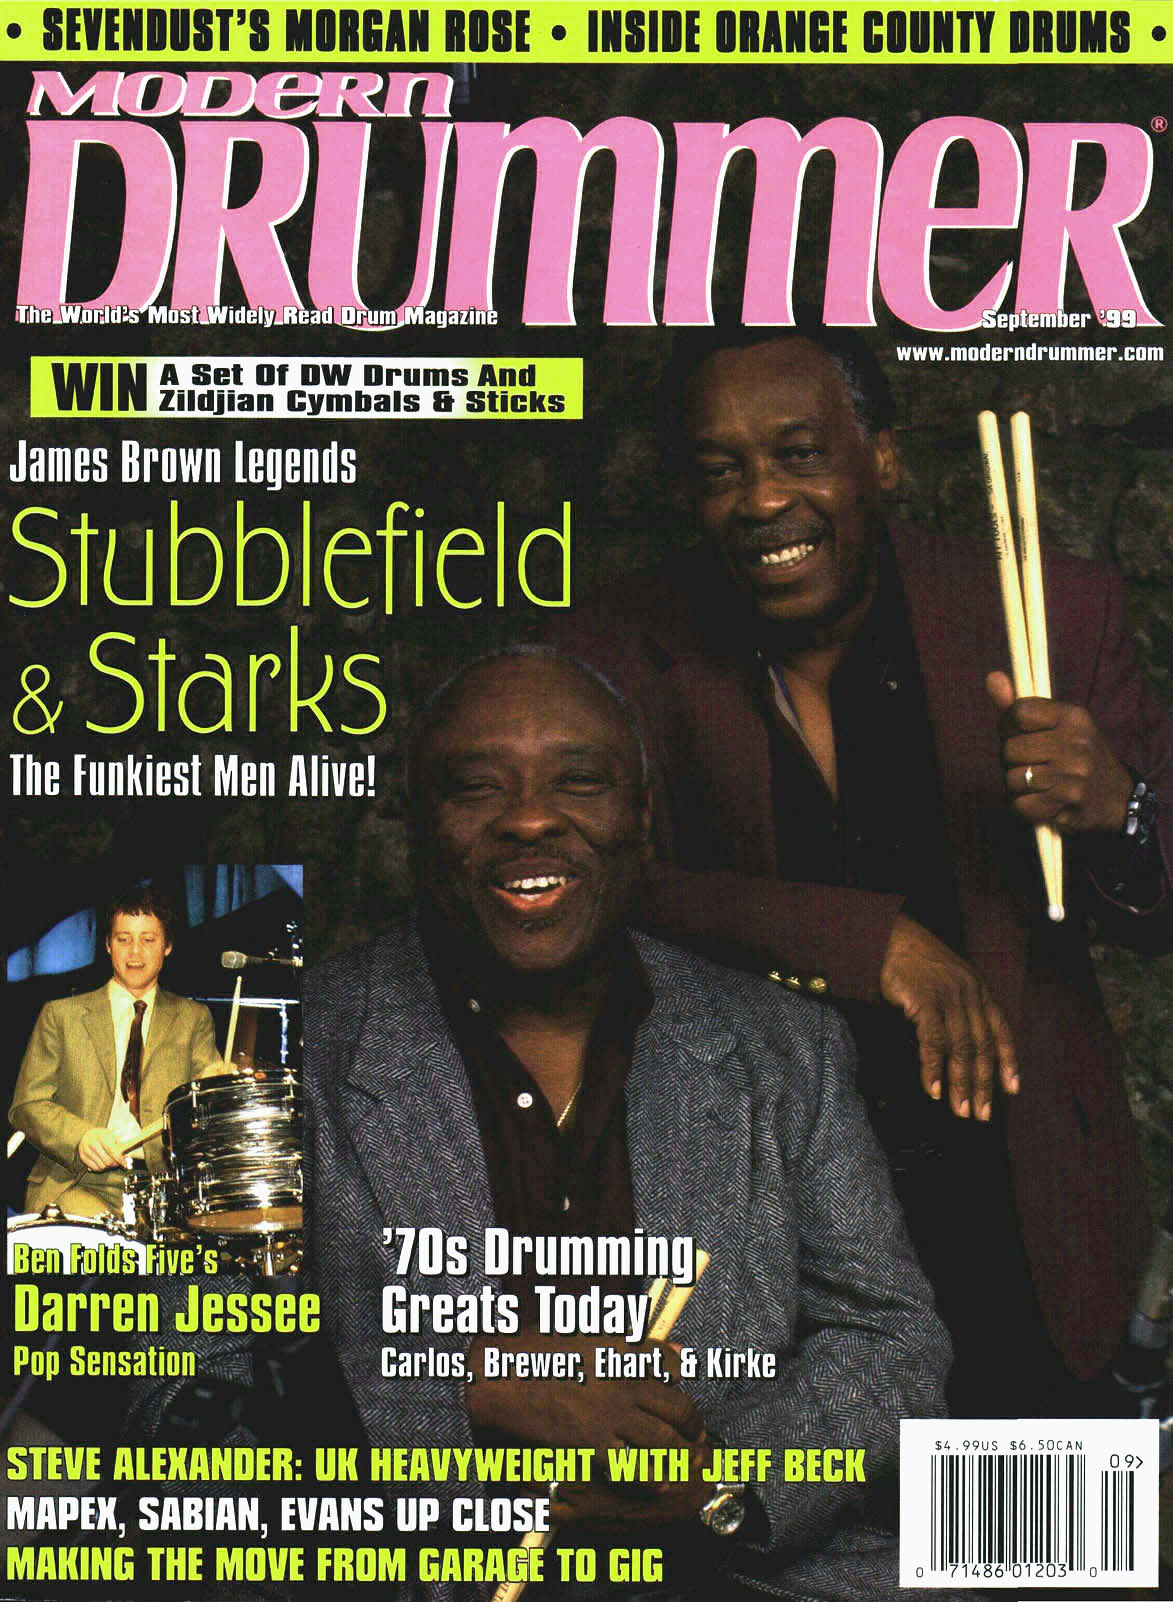 September 1999 - Volume 23 • Number 9 - Modern Drummer Magazine